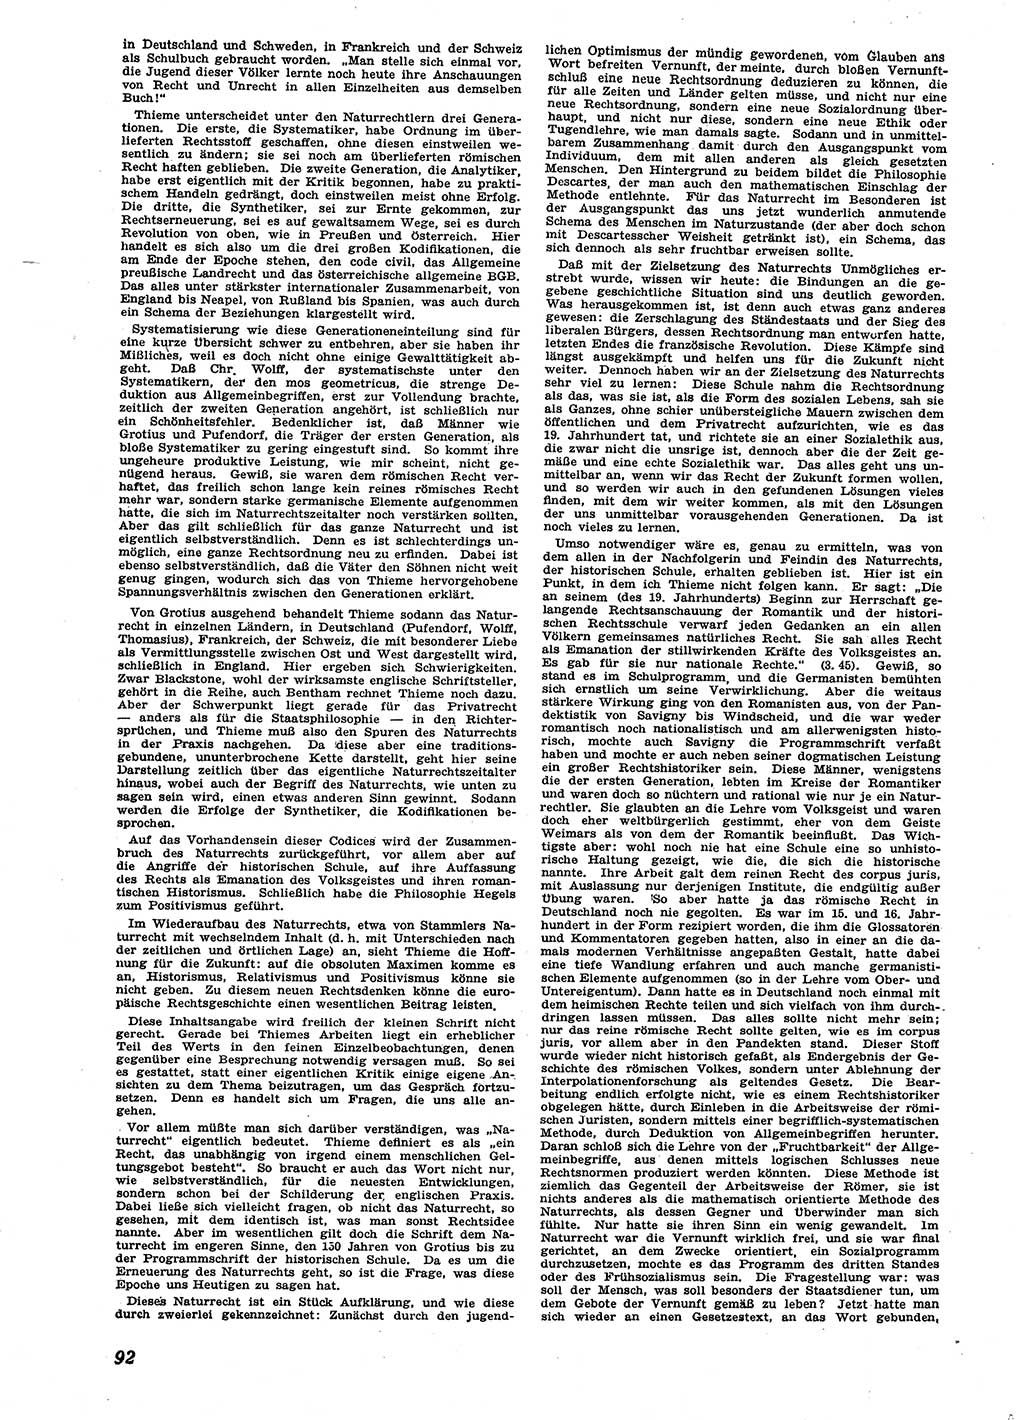 Neue Justiz (NJ), Zeitschrift für Recht und Rechtswissenschaft [Sowjetische Besatzungszone (SBZ) Deutschland], 2. Jahrgang 1948, Seite 92 (NJ SBZ Dtl. 1948, S. 92)